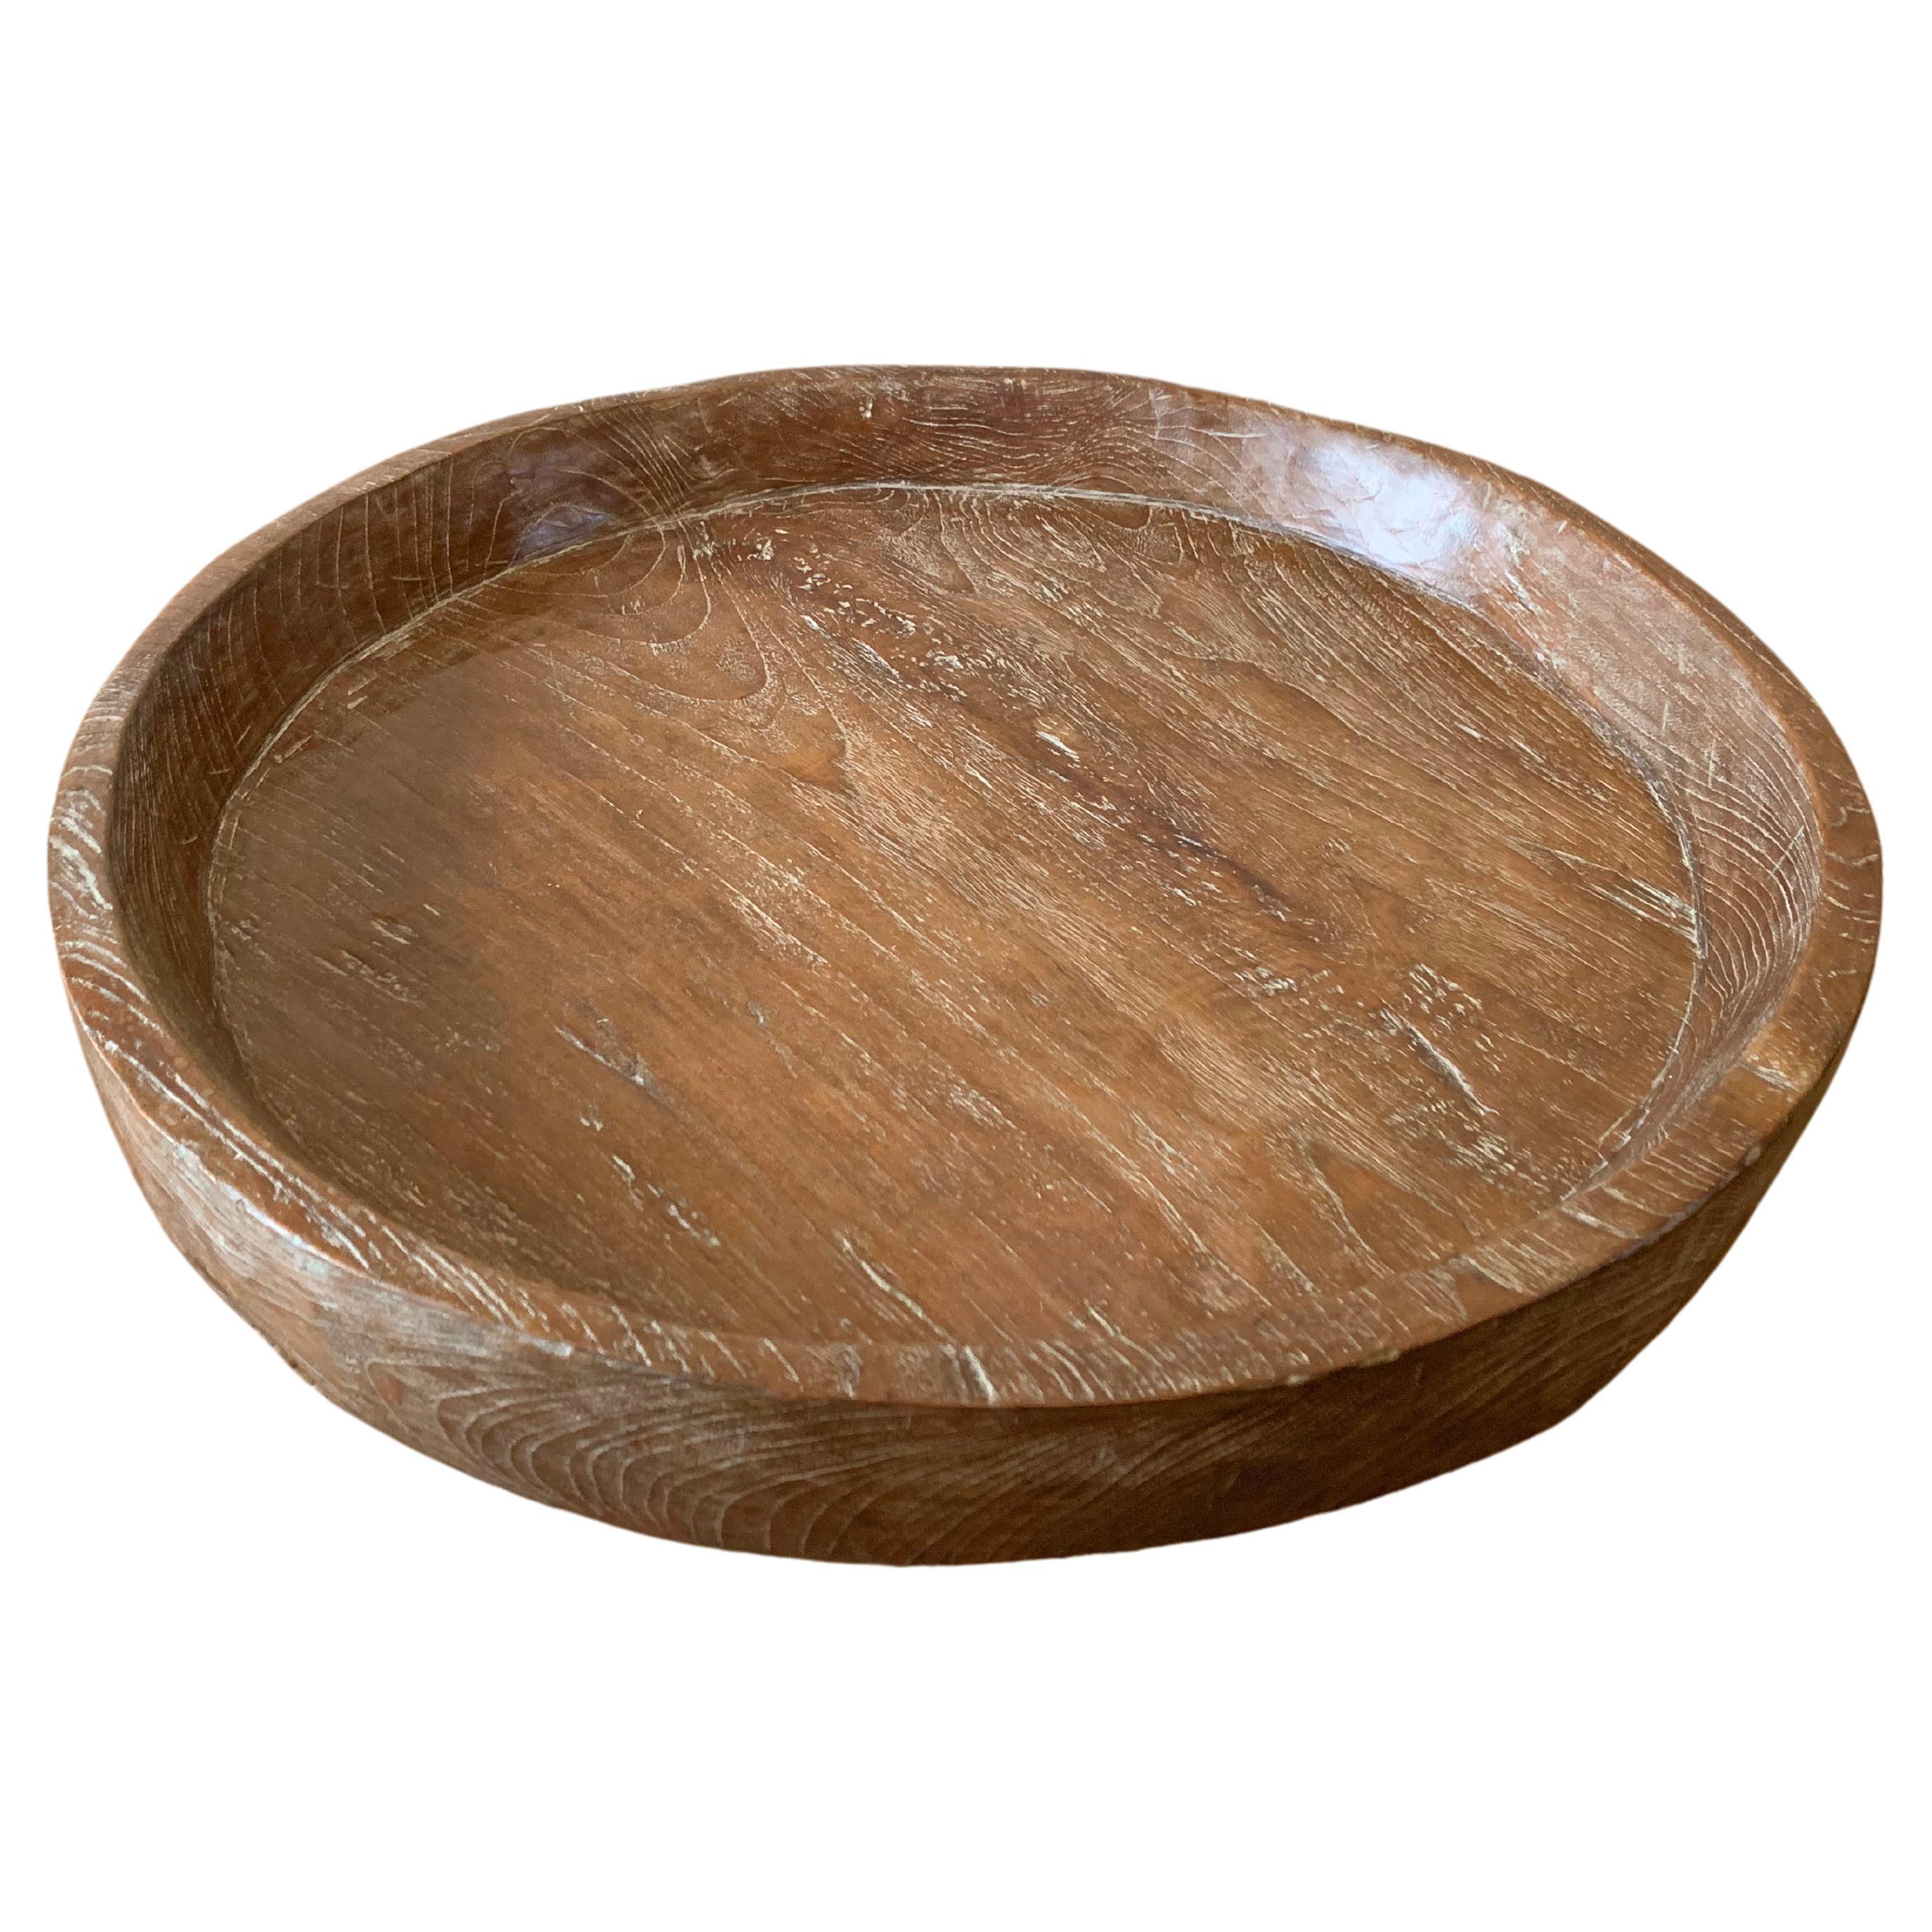 Vintage Teak Wood Bowl from Java, Indonesia